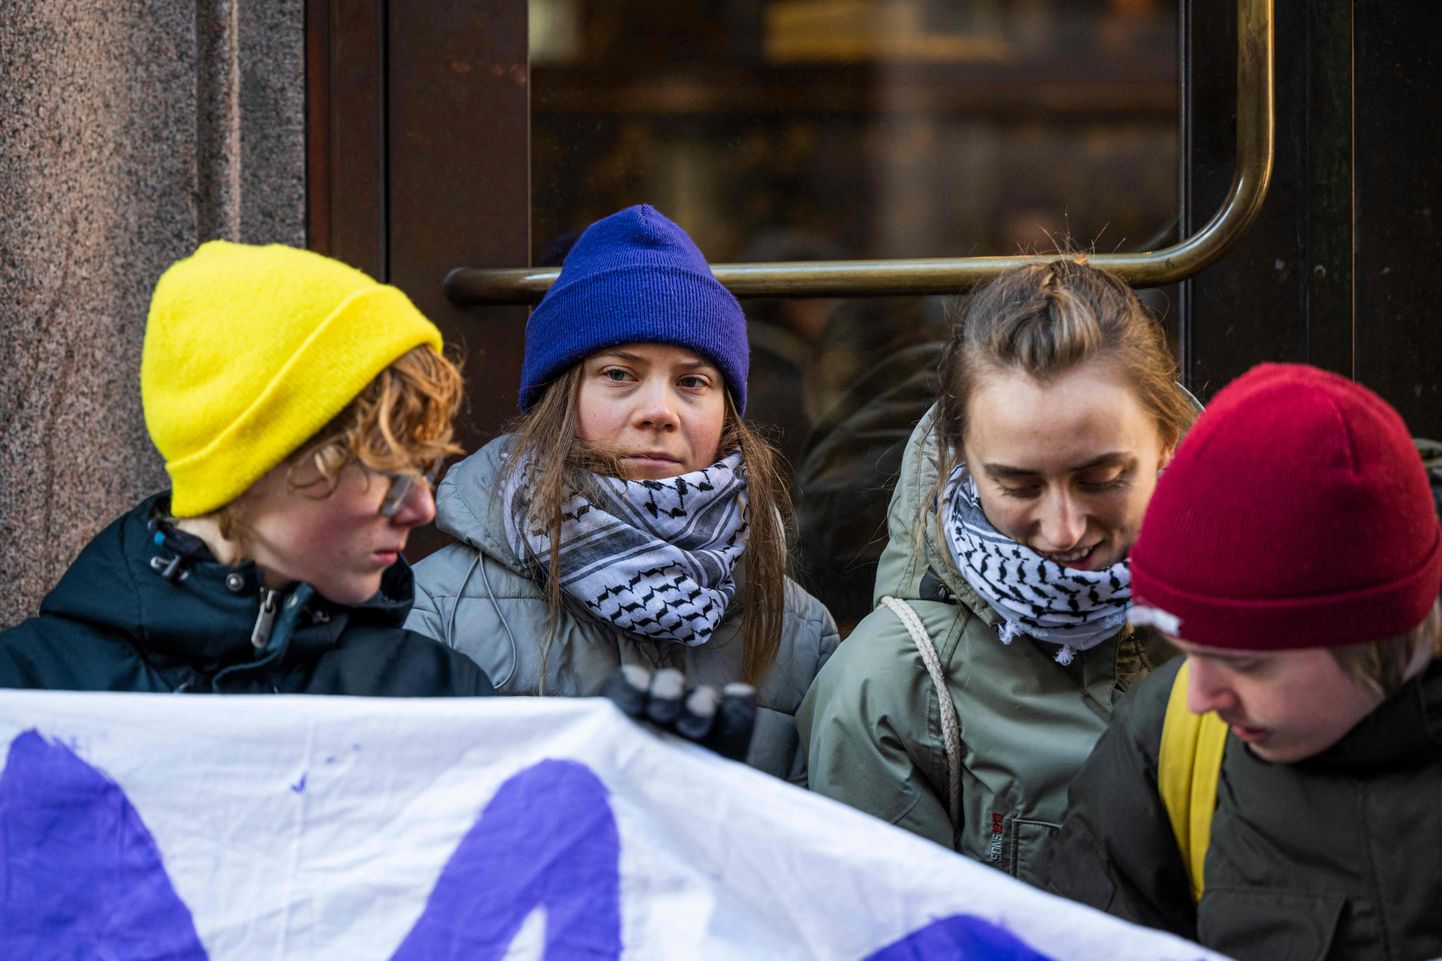 Kliimaaktivist Greta Thunberg (sinises mütsis) täna koos kaaslastega Stockholmis tõkestamas sissepääsu Rootsi parlamendi hoonesse.